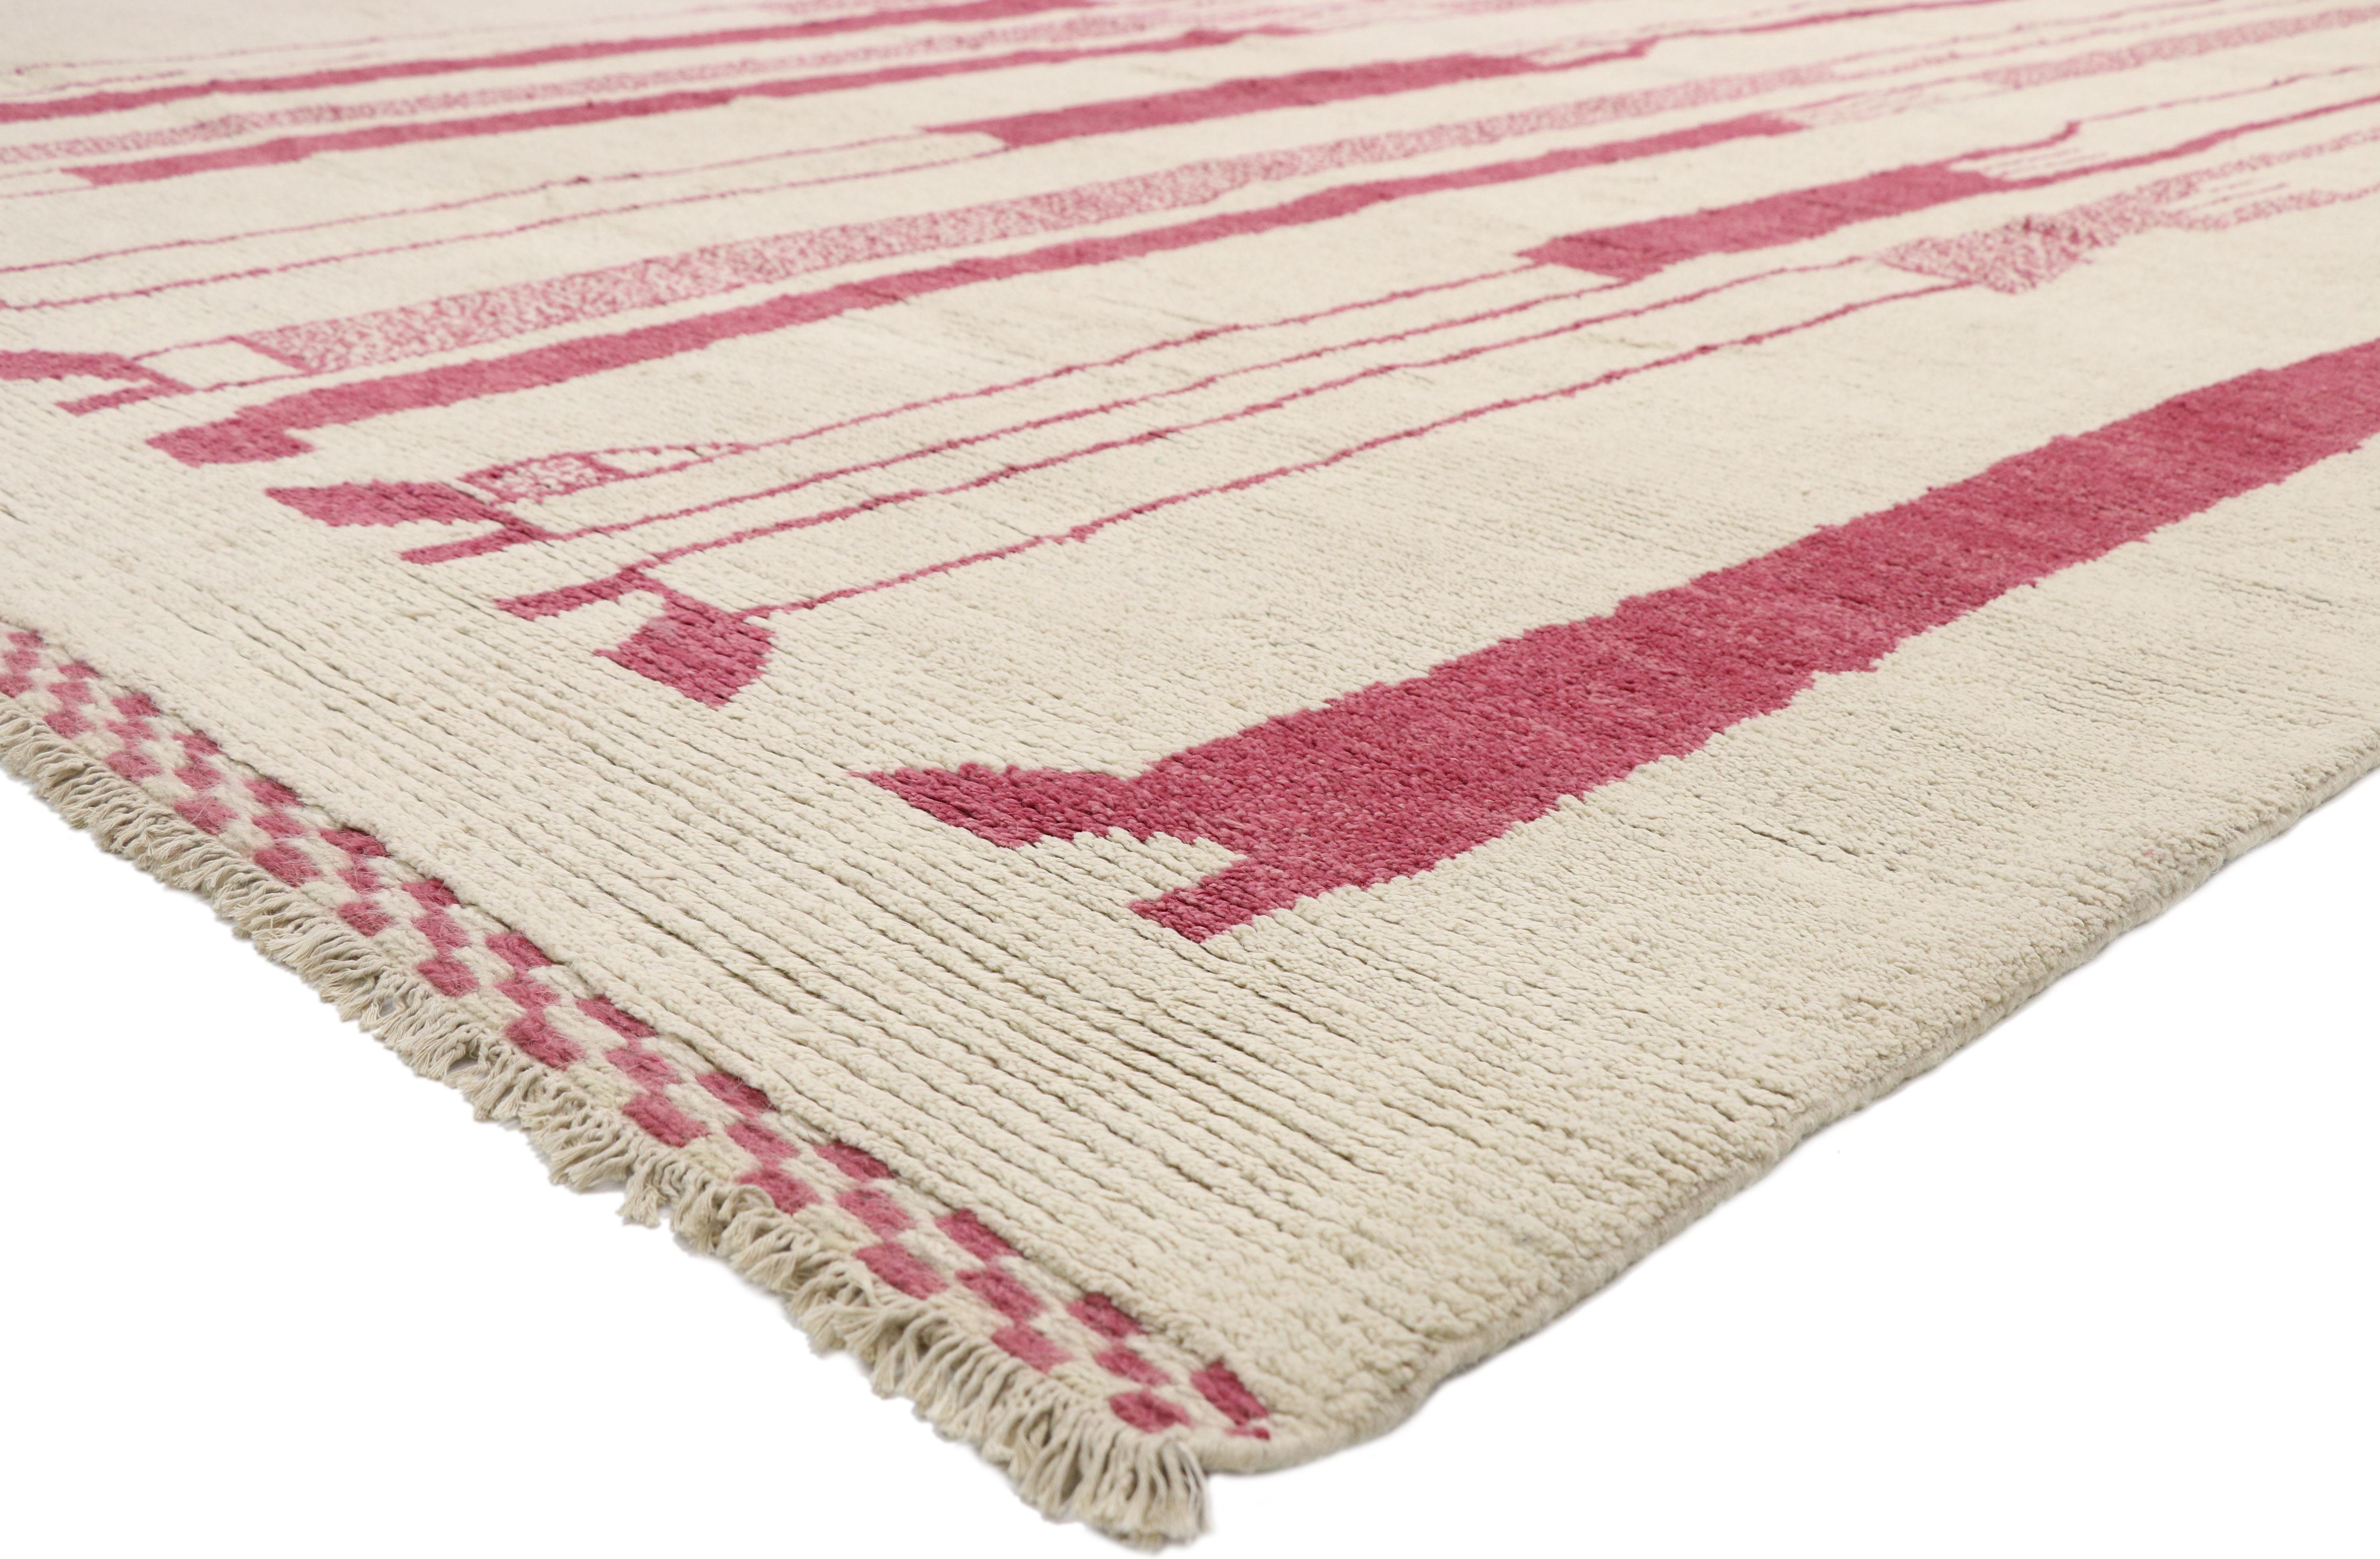 80530, neuer zeitgenössischer marokkanischer Teppich, inspiriert von Alberto Giacometti Dogon Tribe. Dieser moderne marokkanische Teppich aus handgeknüpfter Wolle zeichnet sich durch langgestreckte Silhouetten in dunklem Rosa vor einem unifarbenen,